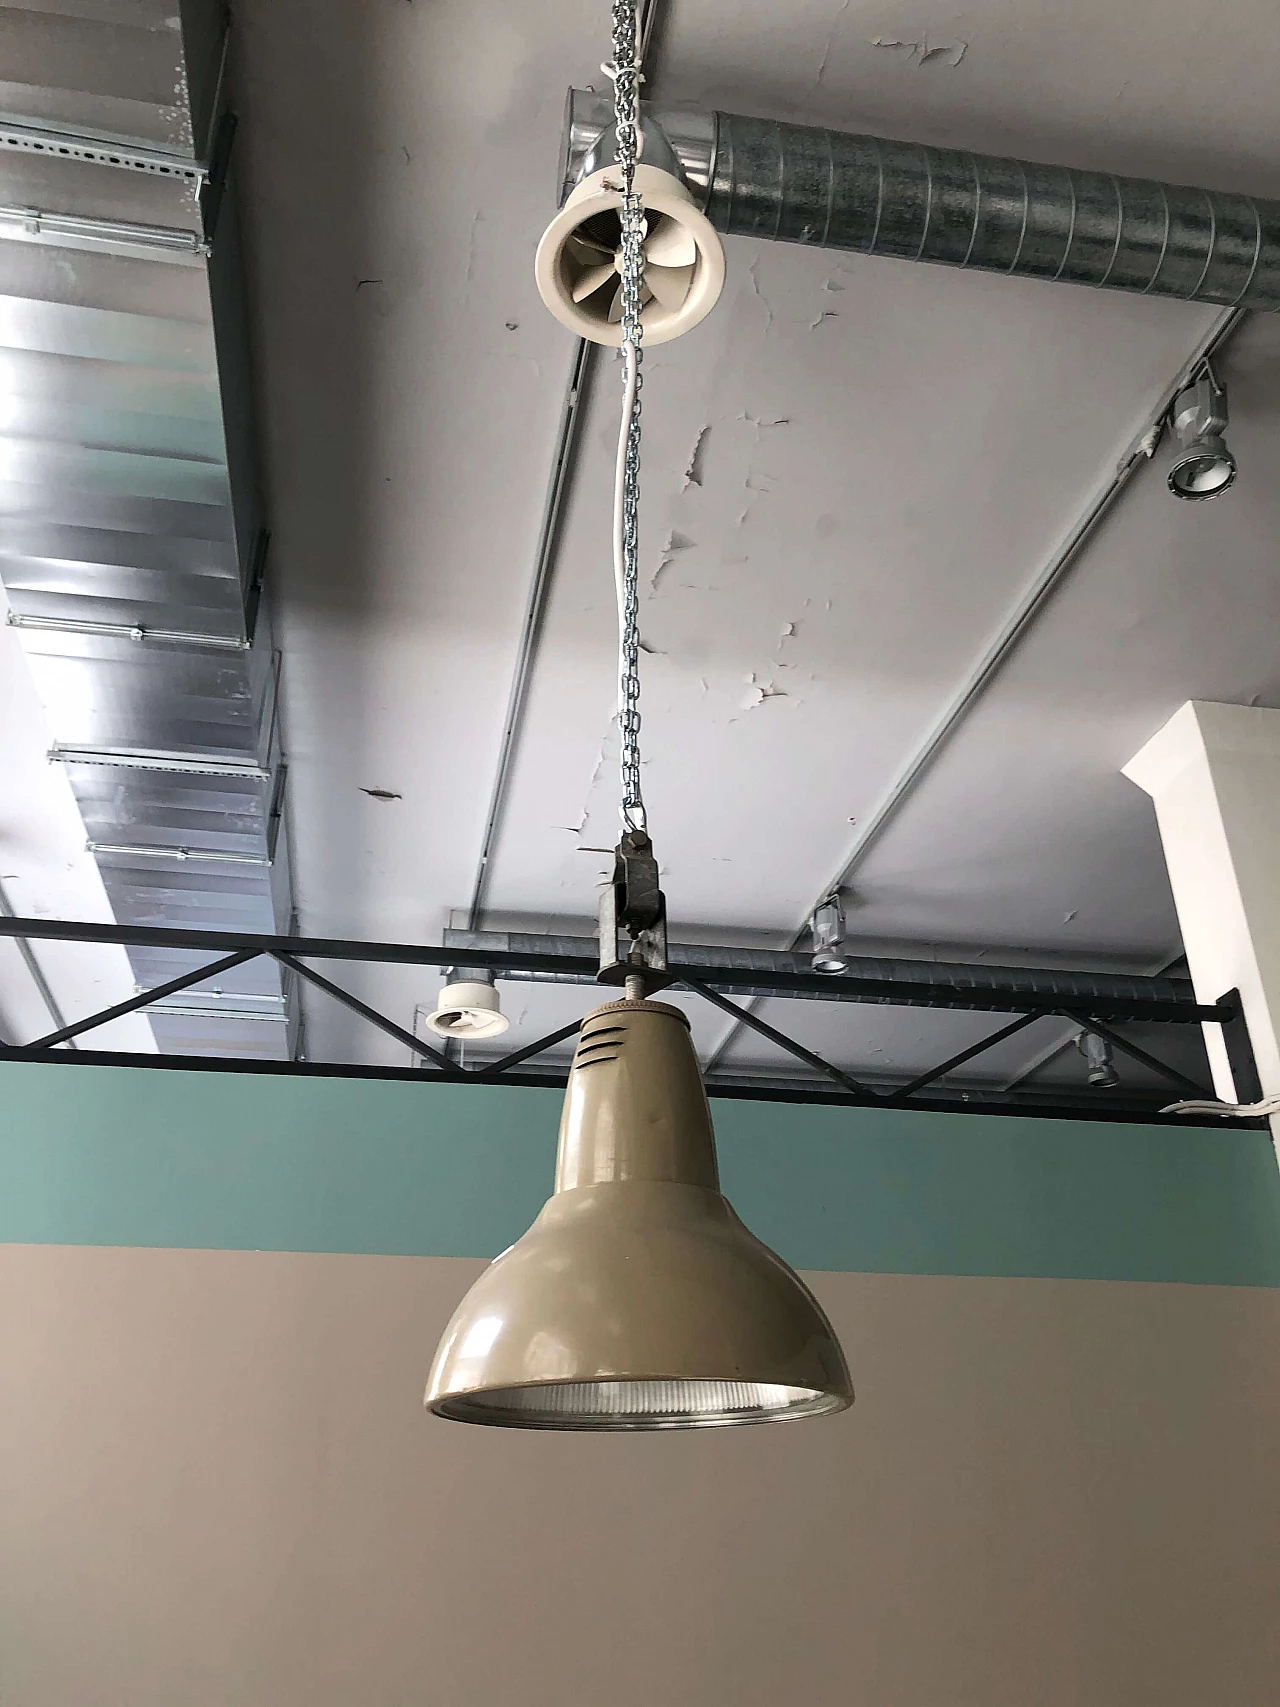 Painted metal industrial ceiling lamp, 1940s 1303806